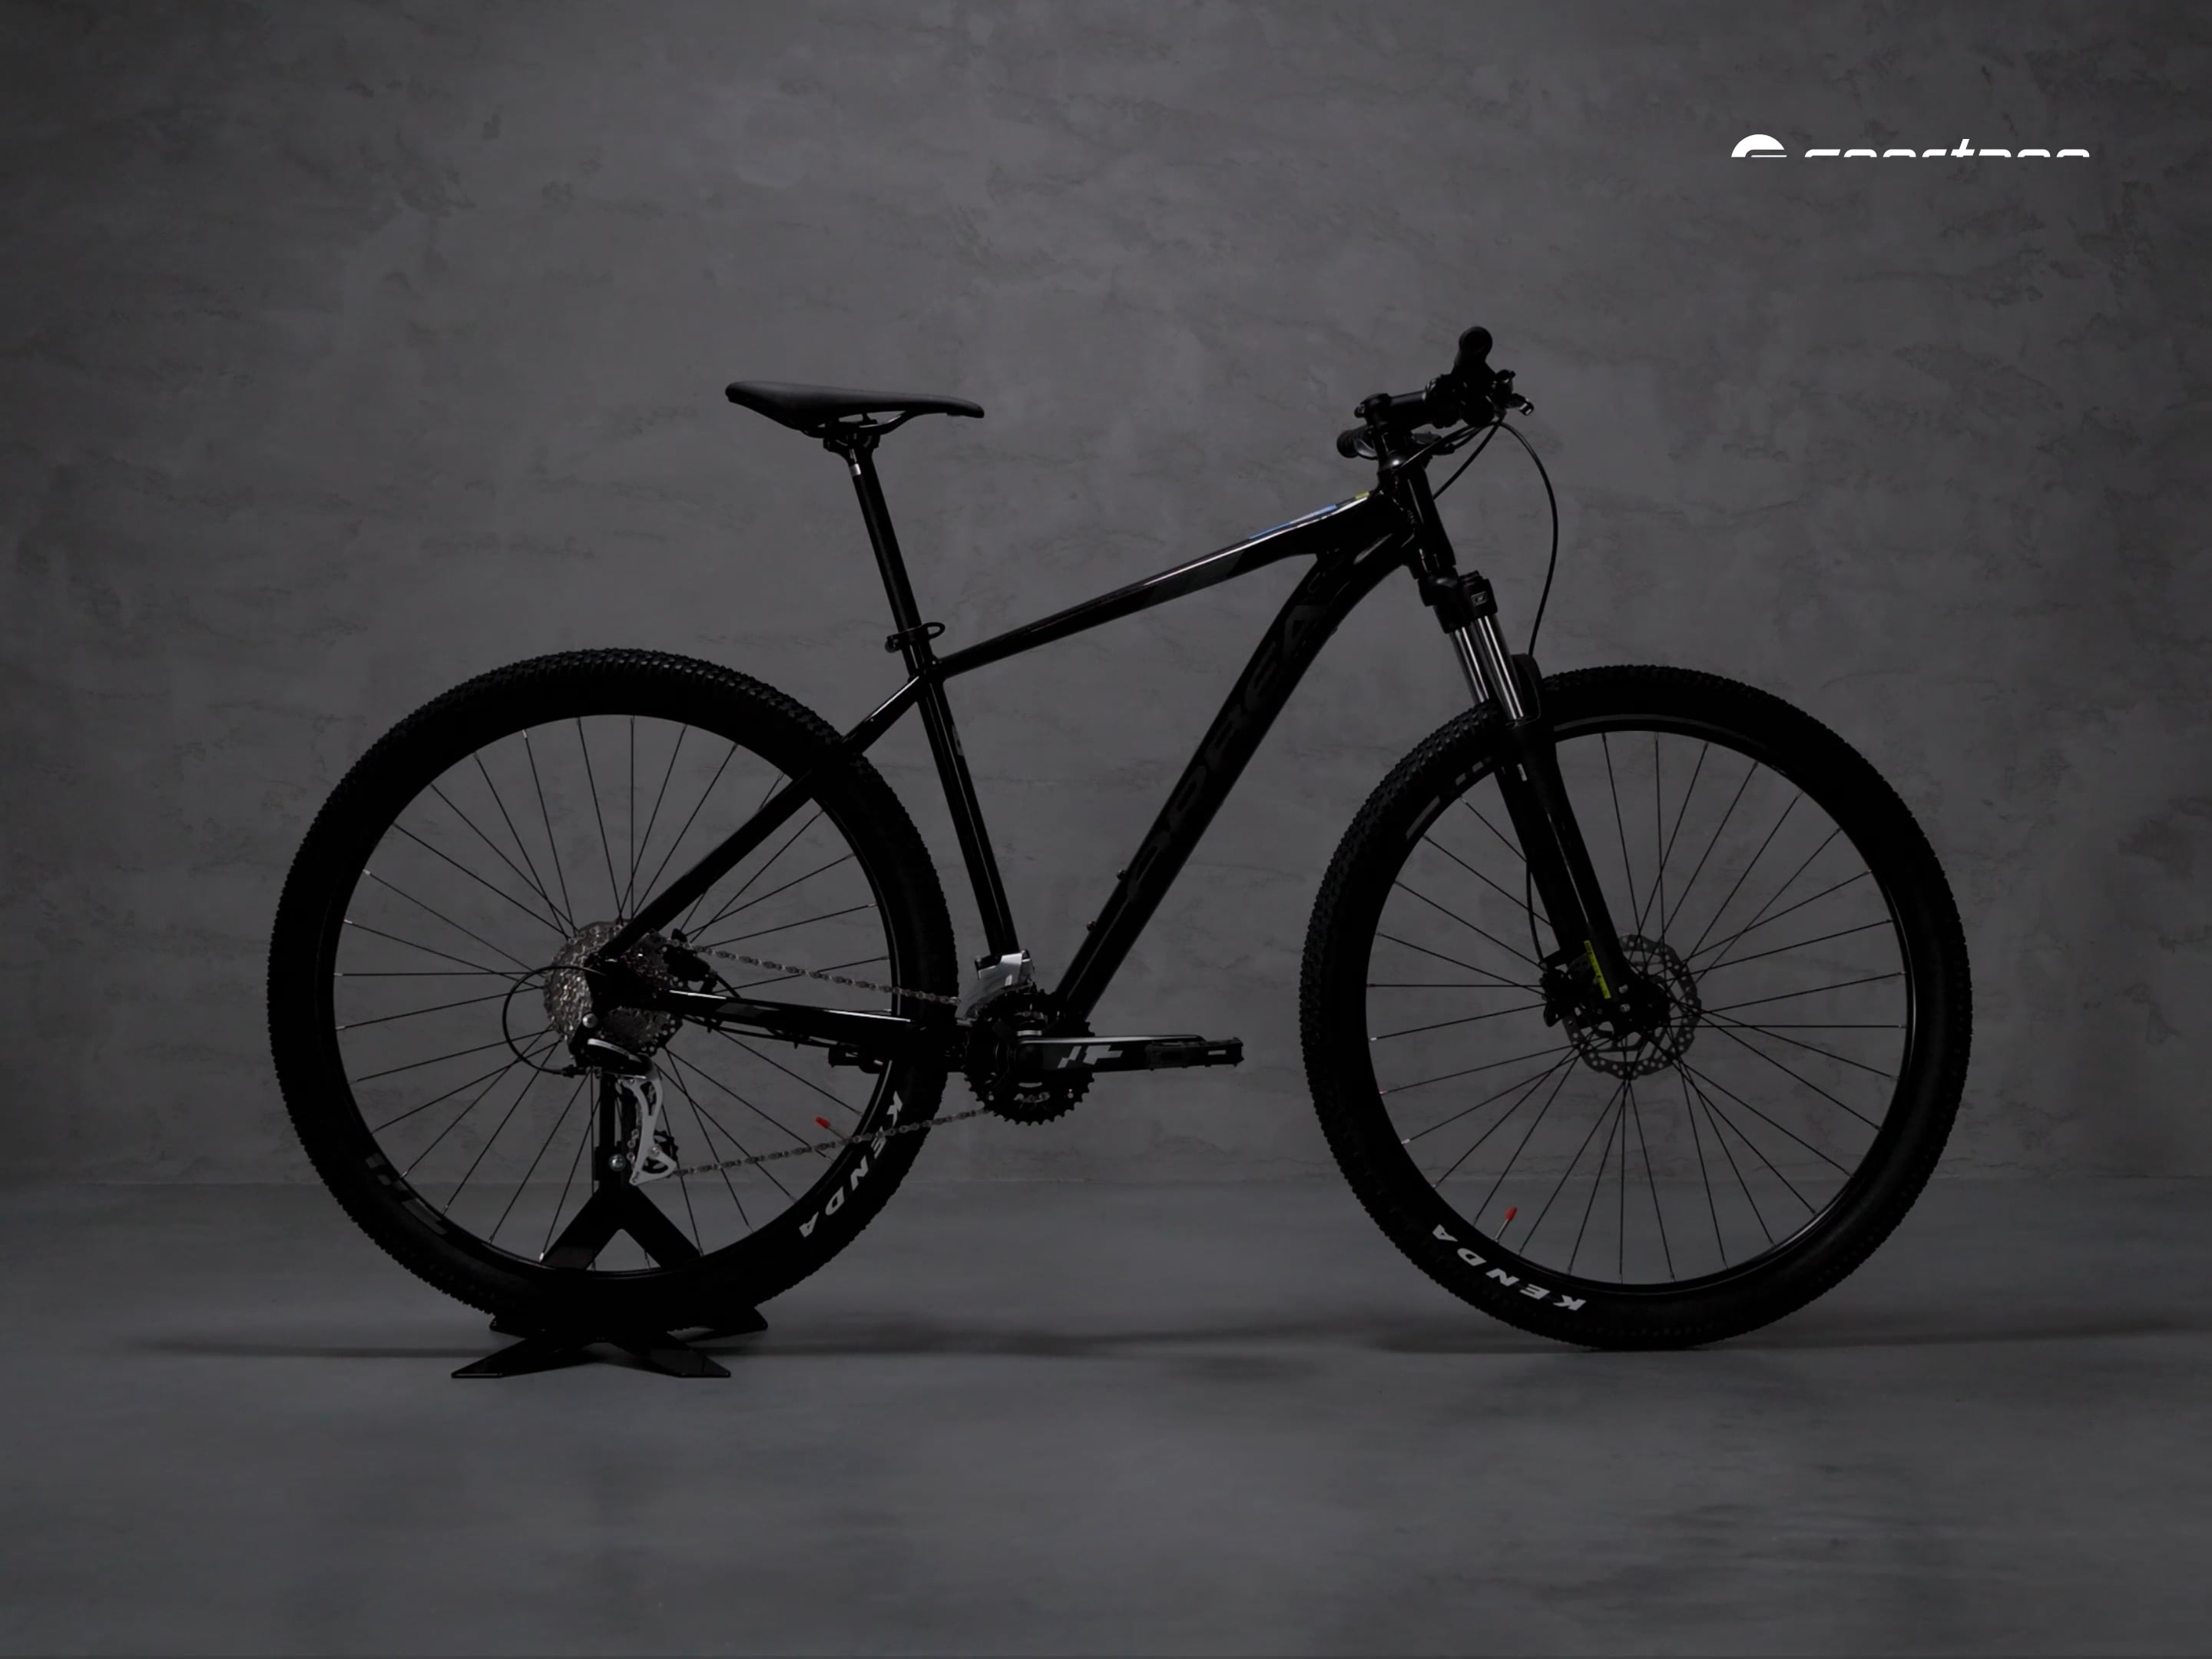 Ποδήλατο βουνού Orbea MX 29 50 μαύρο